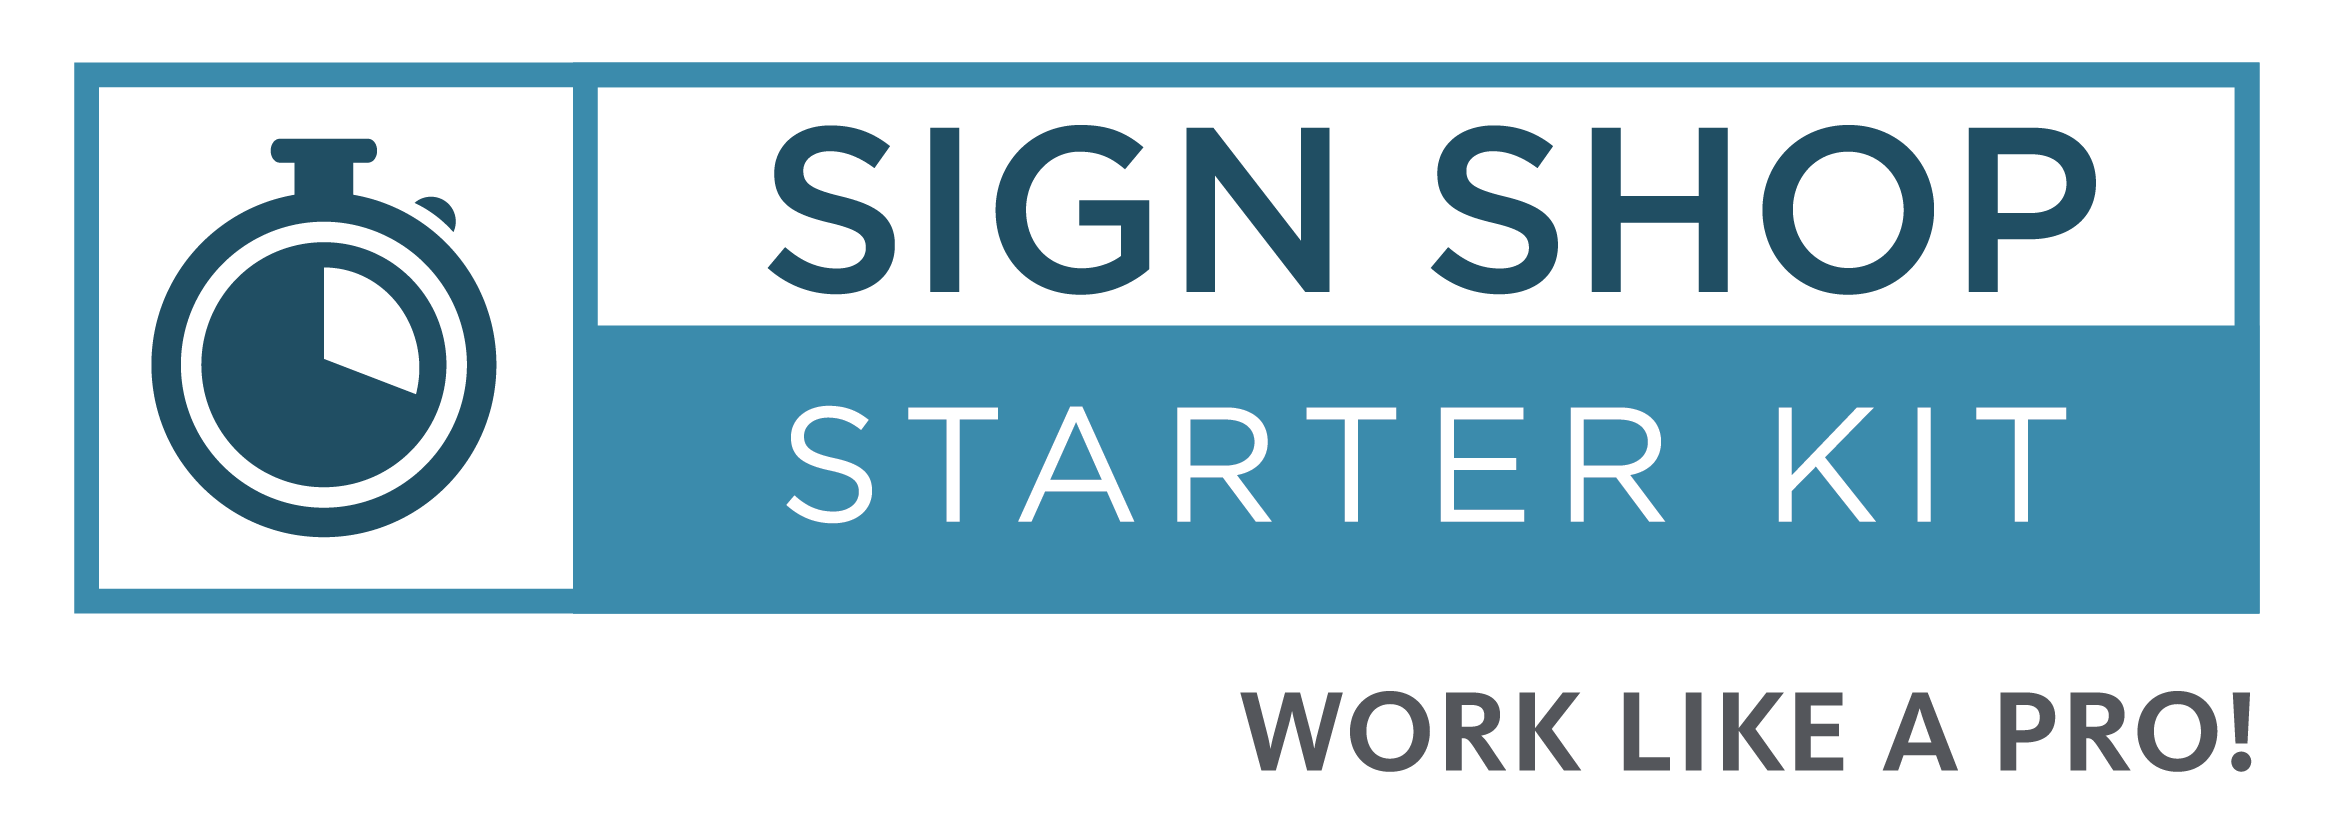 Sign Shop Starter Kit